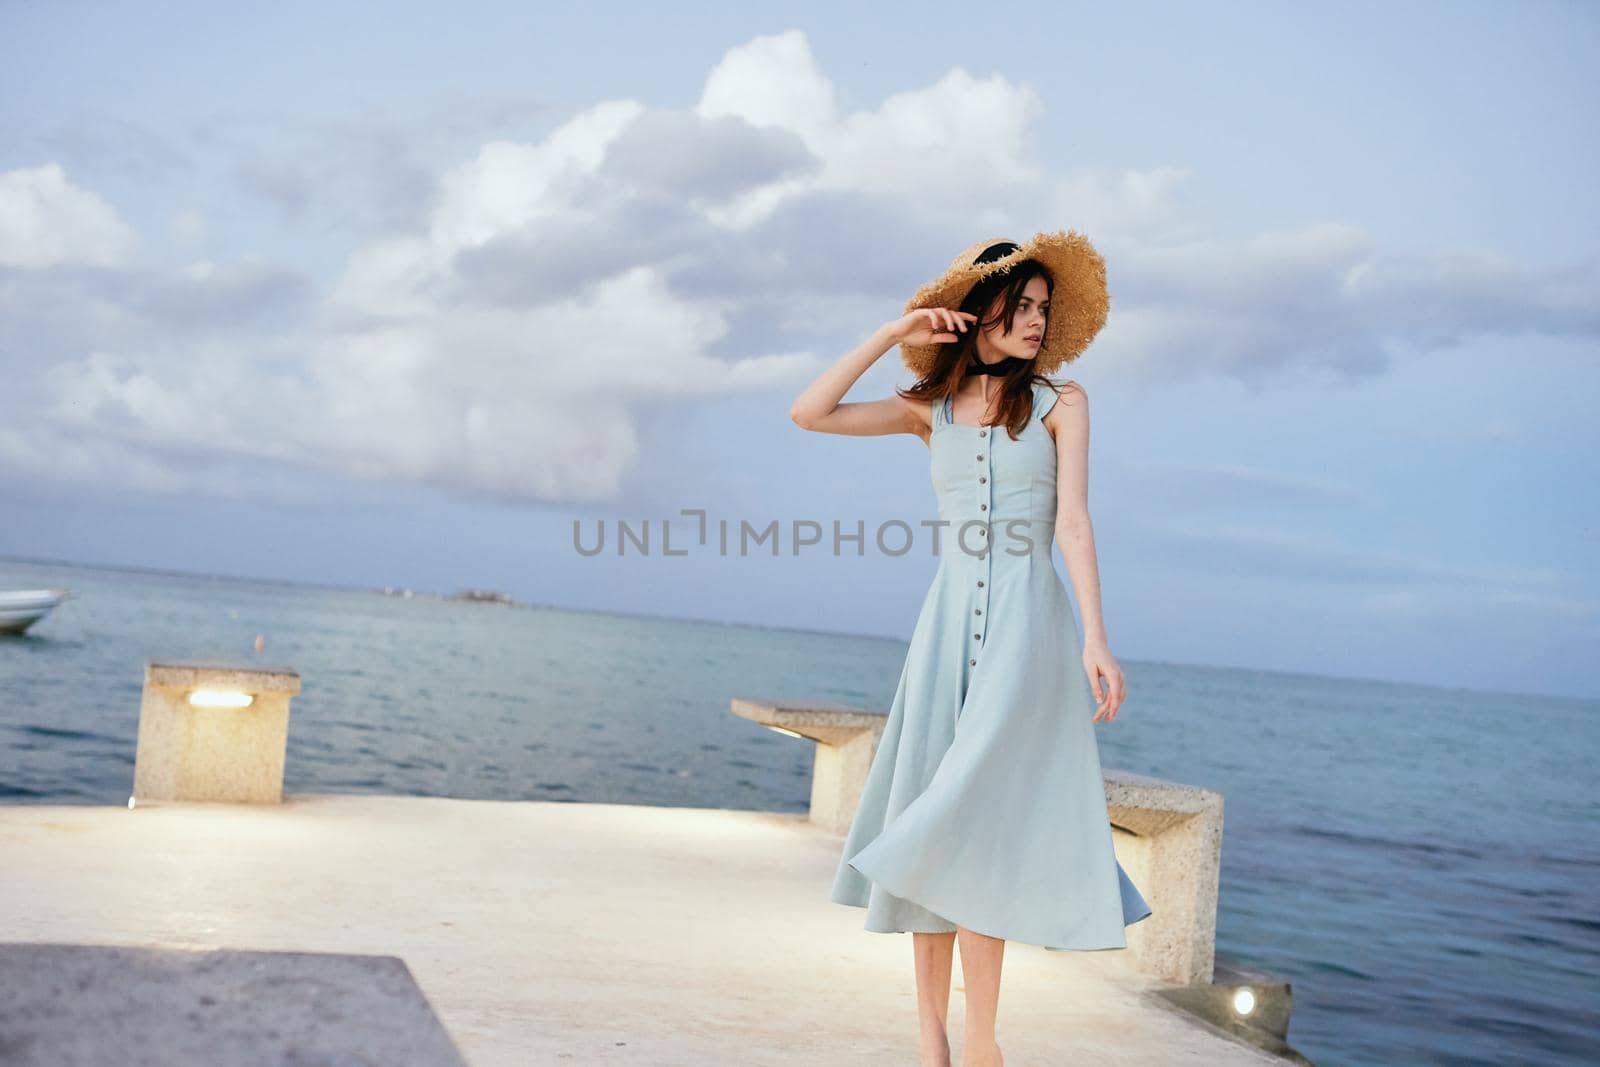 woman in dress near ocean beach summer lifestyle leisure. High quality photo